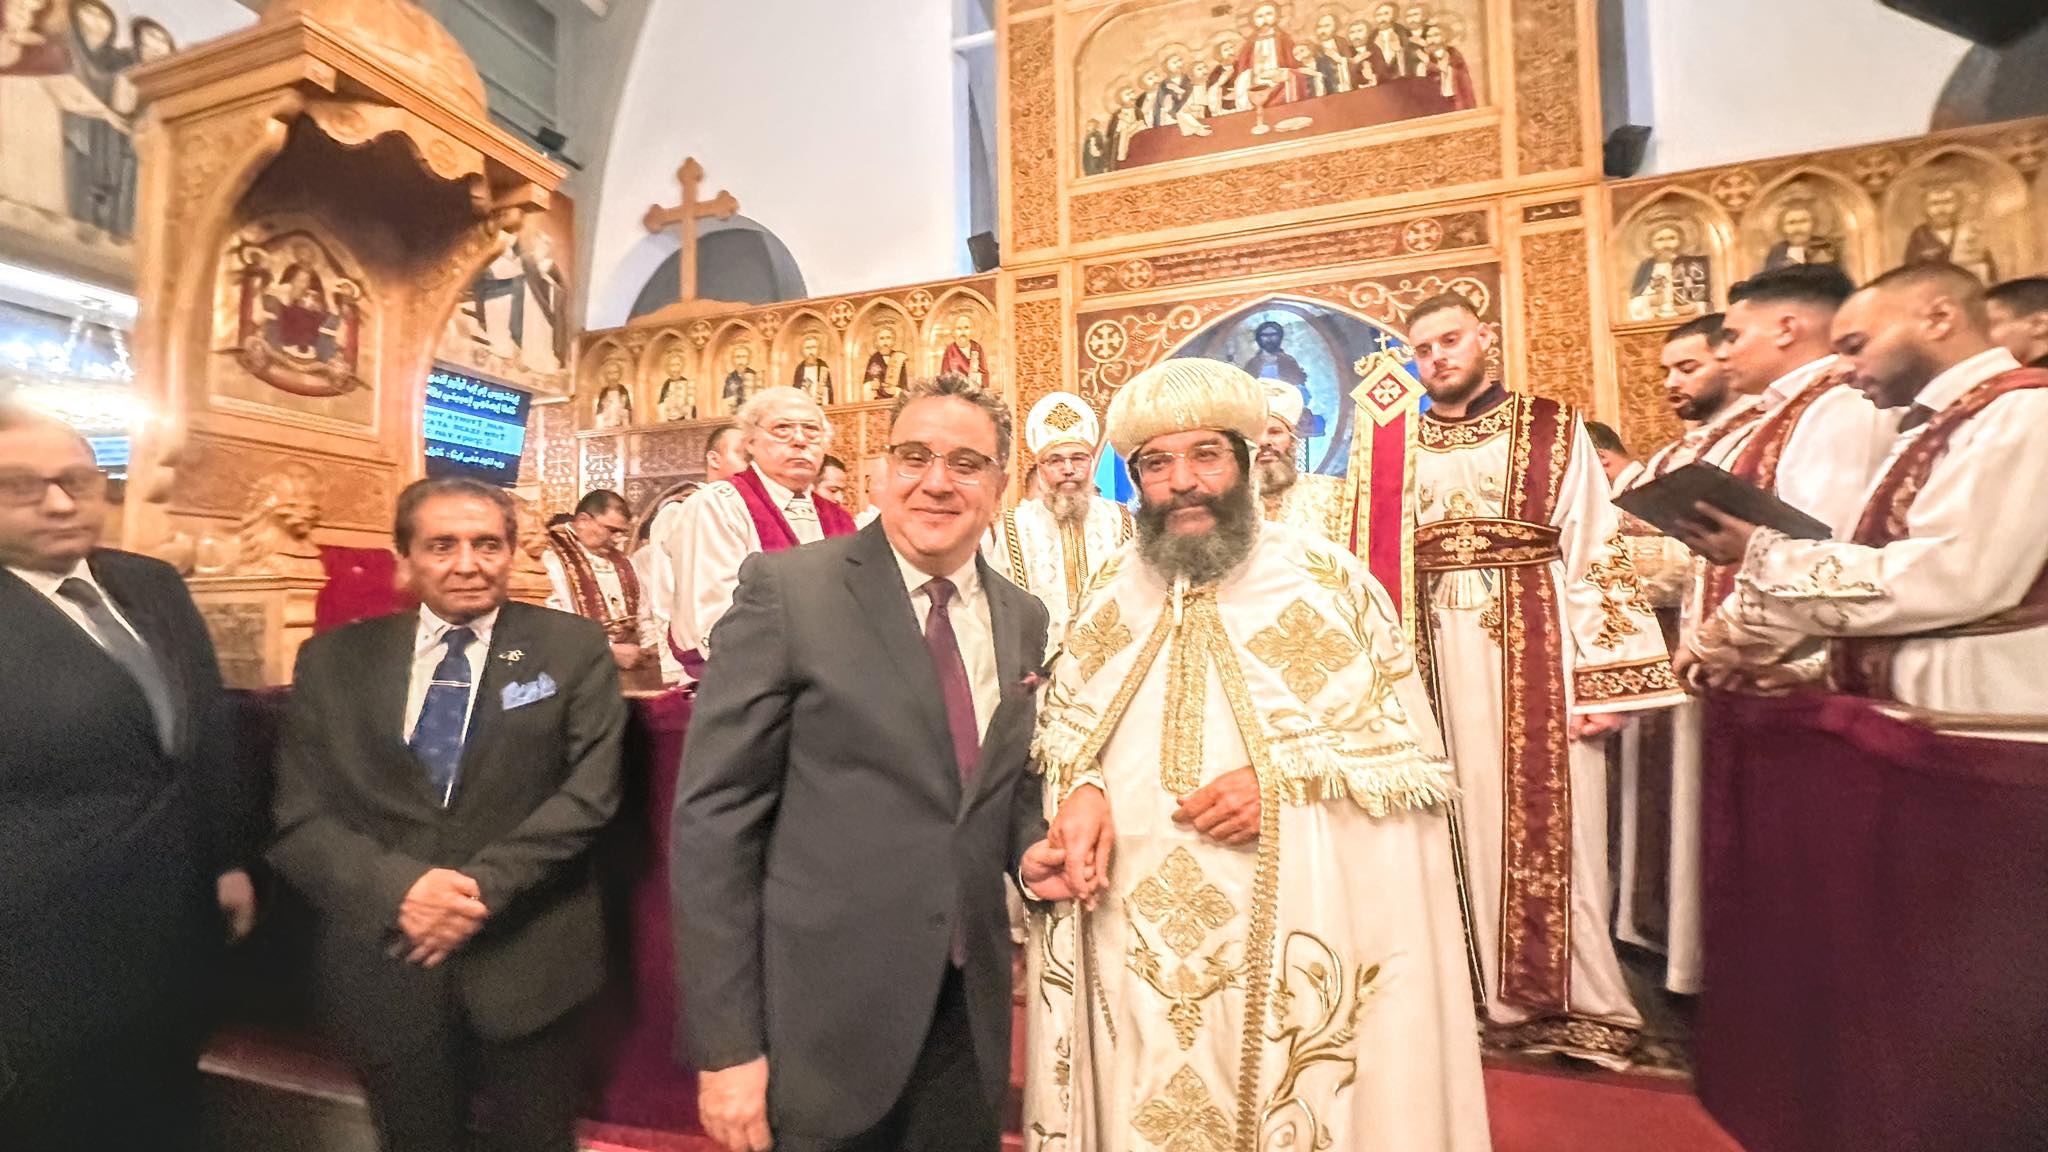 السفير المصري يشارك الأقباط احتفالهم بعيد الميلاد المجيد بكنيسة عذراء الزيتون بفيينا